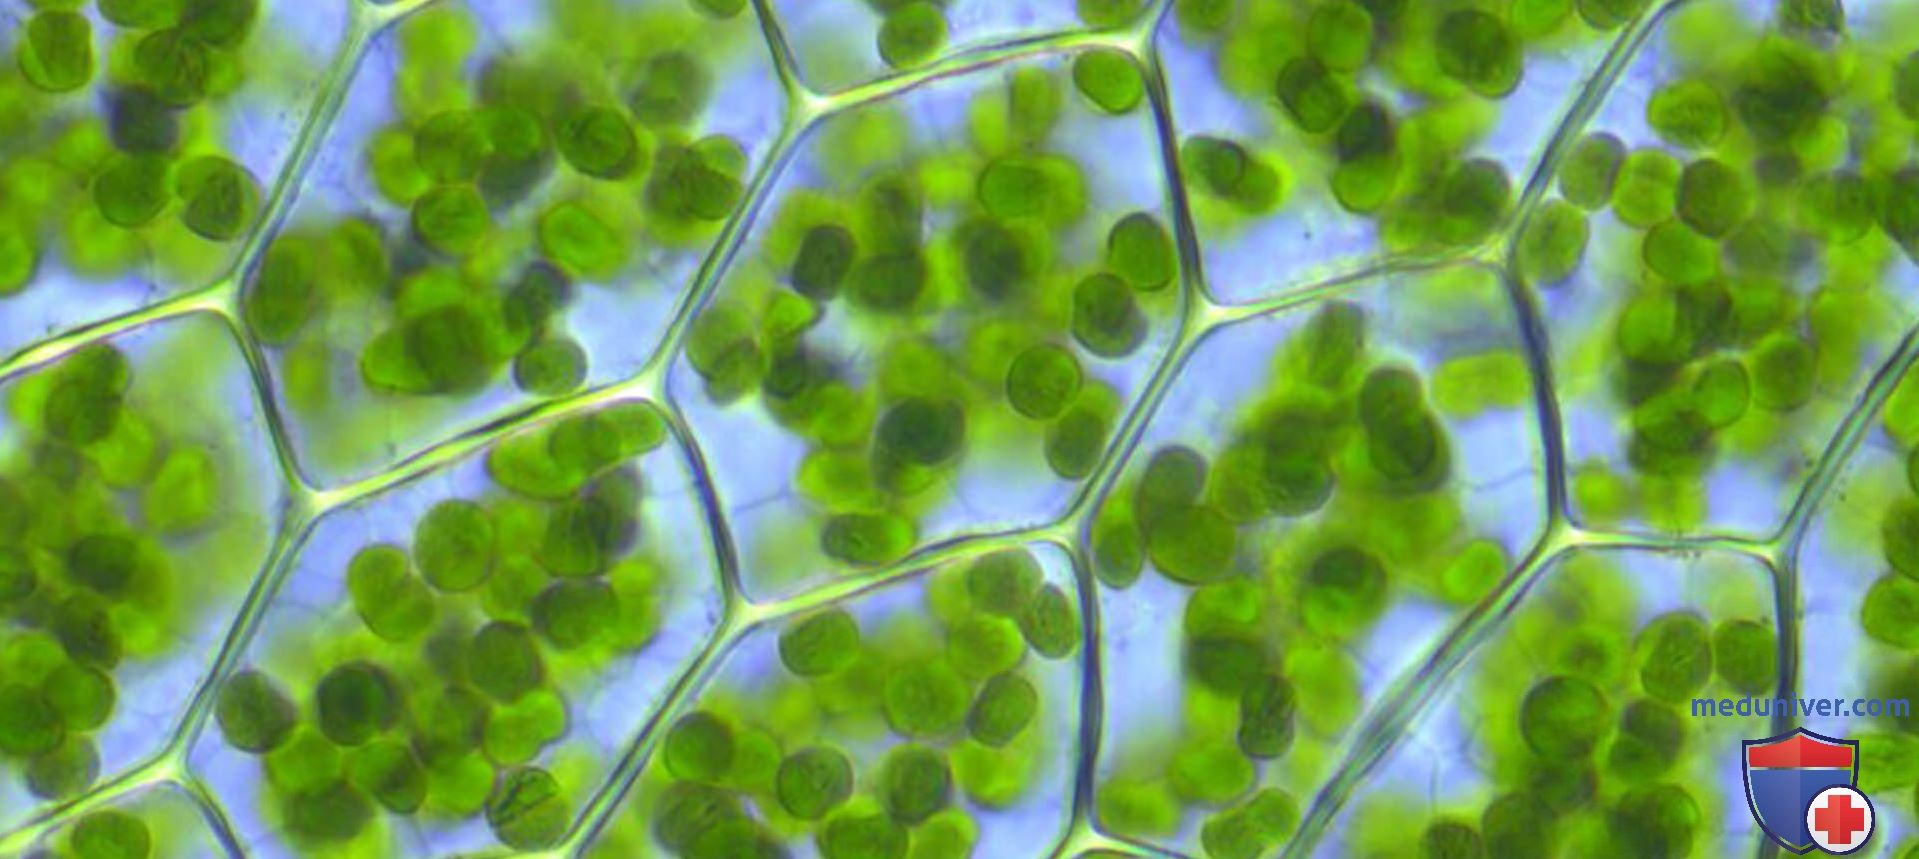 Хлорофилл в жизни растения. Хлорофилл в растениях. Хлорофилл под микроскопом. Хлорофилл зеленый.